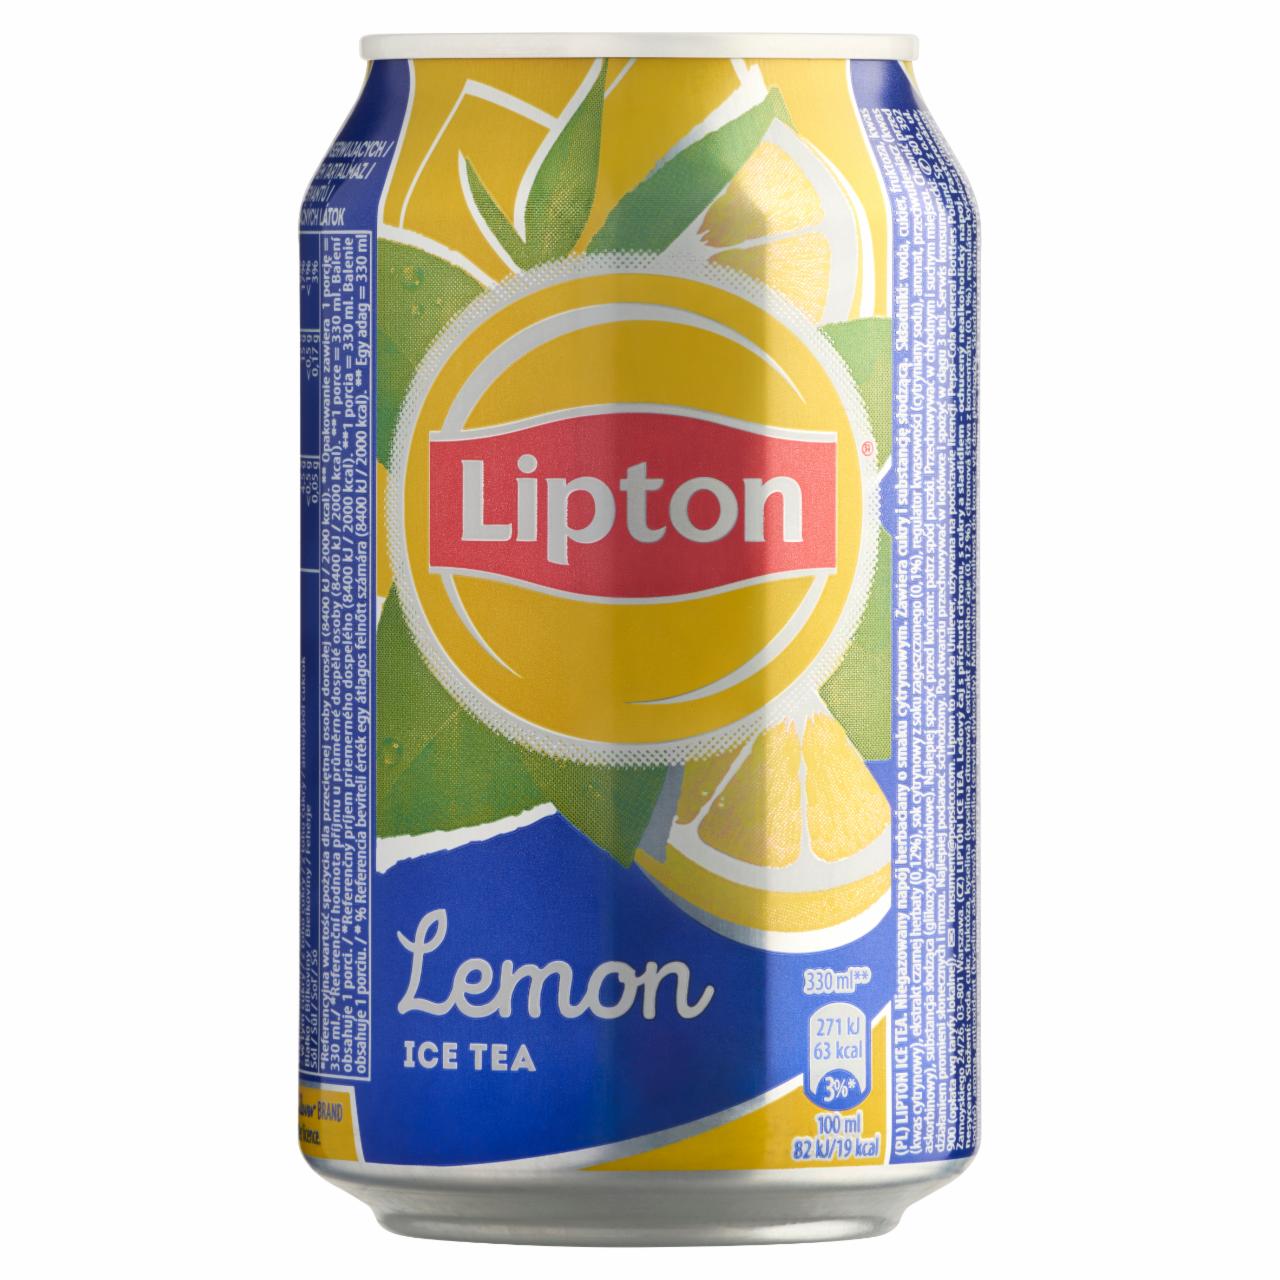 Képek - Lipton Ice Tea citromízű szénsavmentes üdítőital cukorral és édesítőszerrel 330 ml